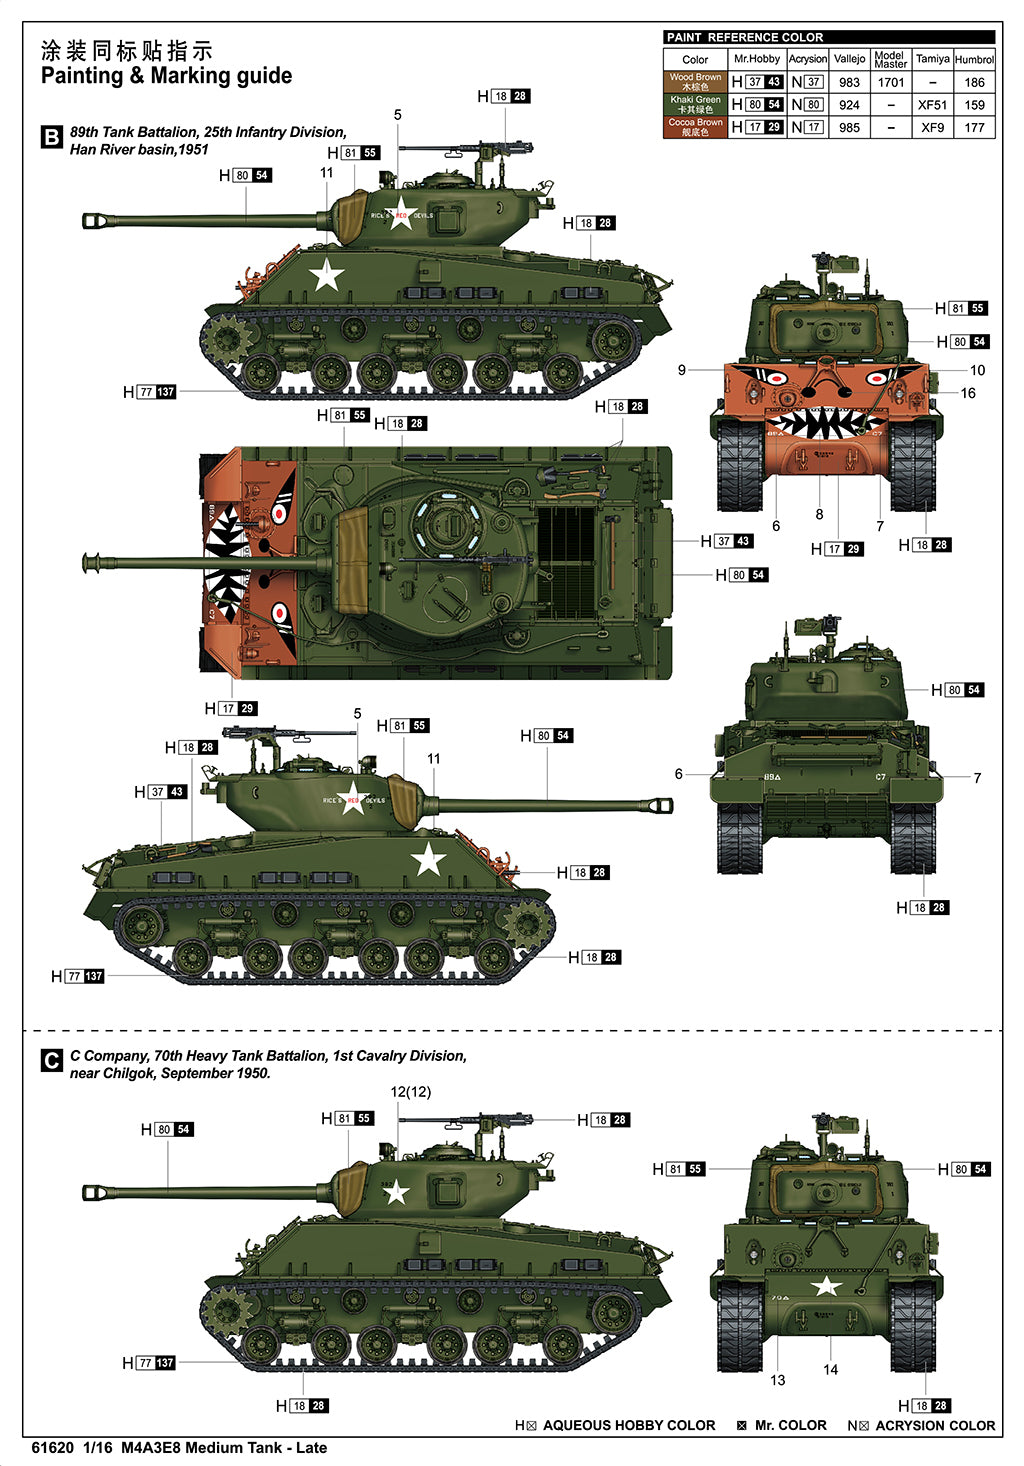 I Love Kit 1/16 M4A3E8 Medium Tank - Late Plastic Model Kit